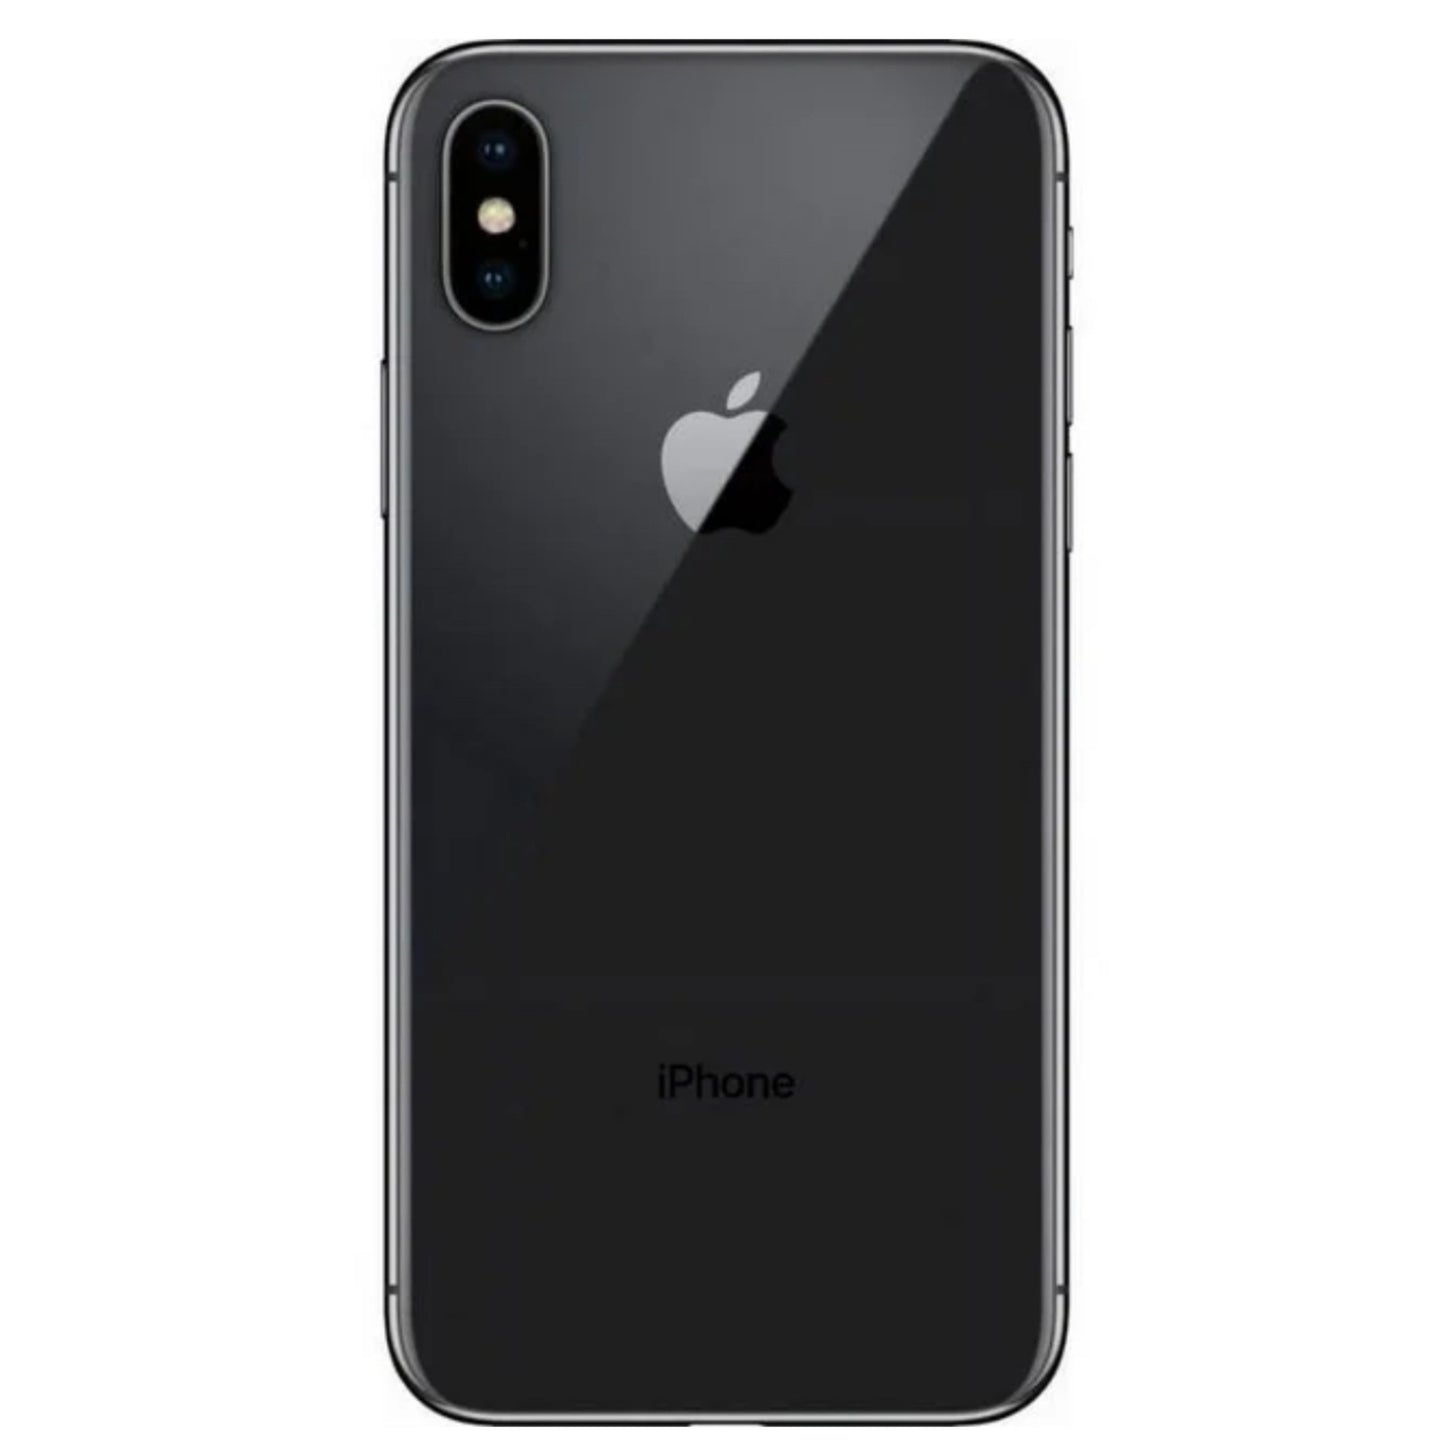 iPhone X gris espacial 256 GB (desbloqueado) usado